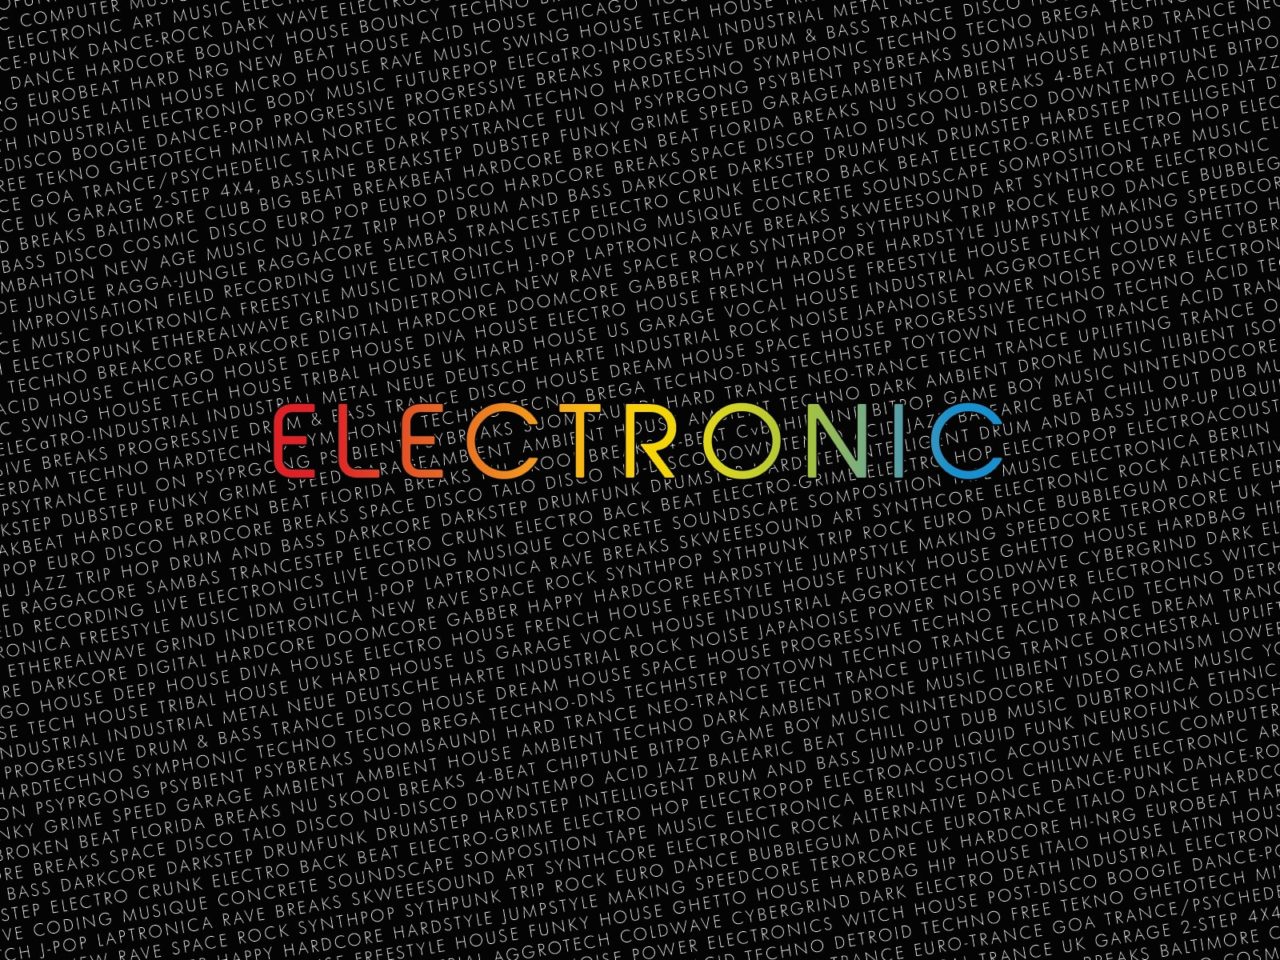 Dance & Electronic